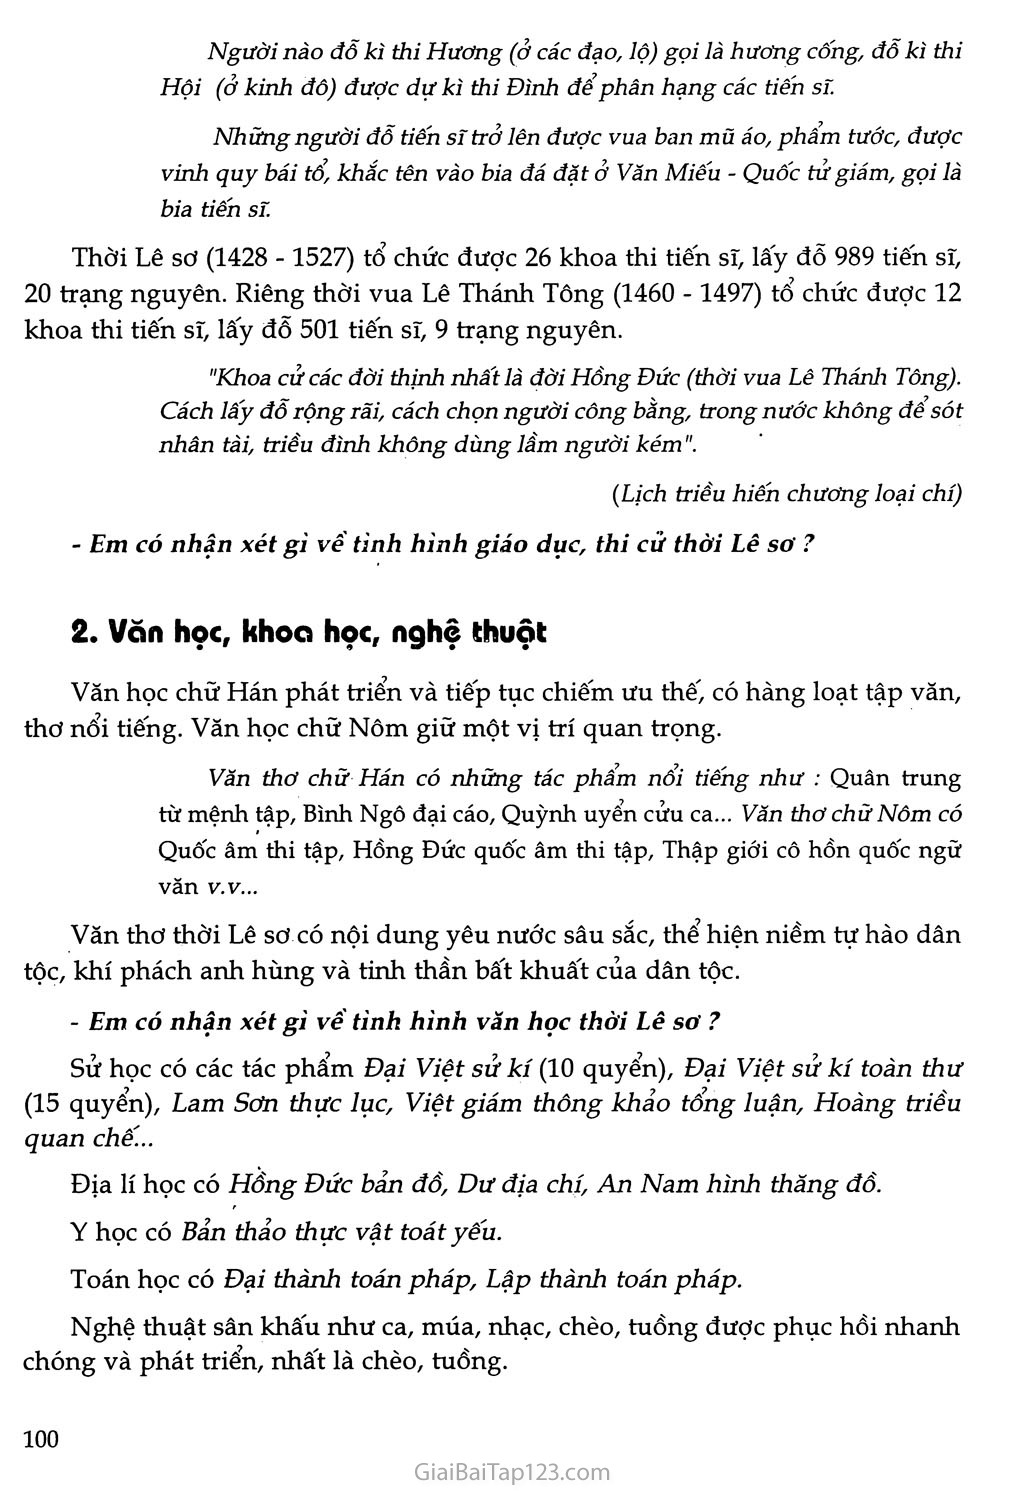 Bài 20 - Nước Đại Việt thời Lê sơ (1428 - 1527) trang 7